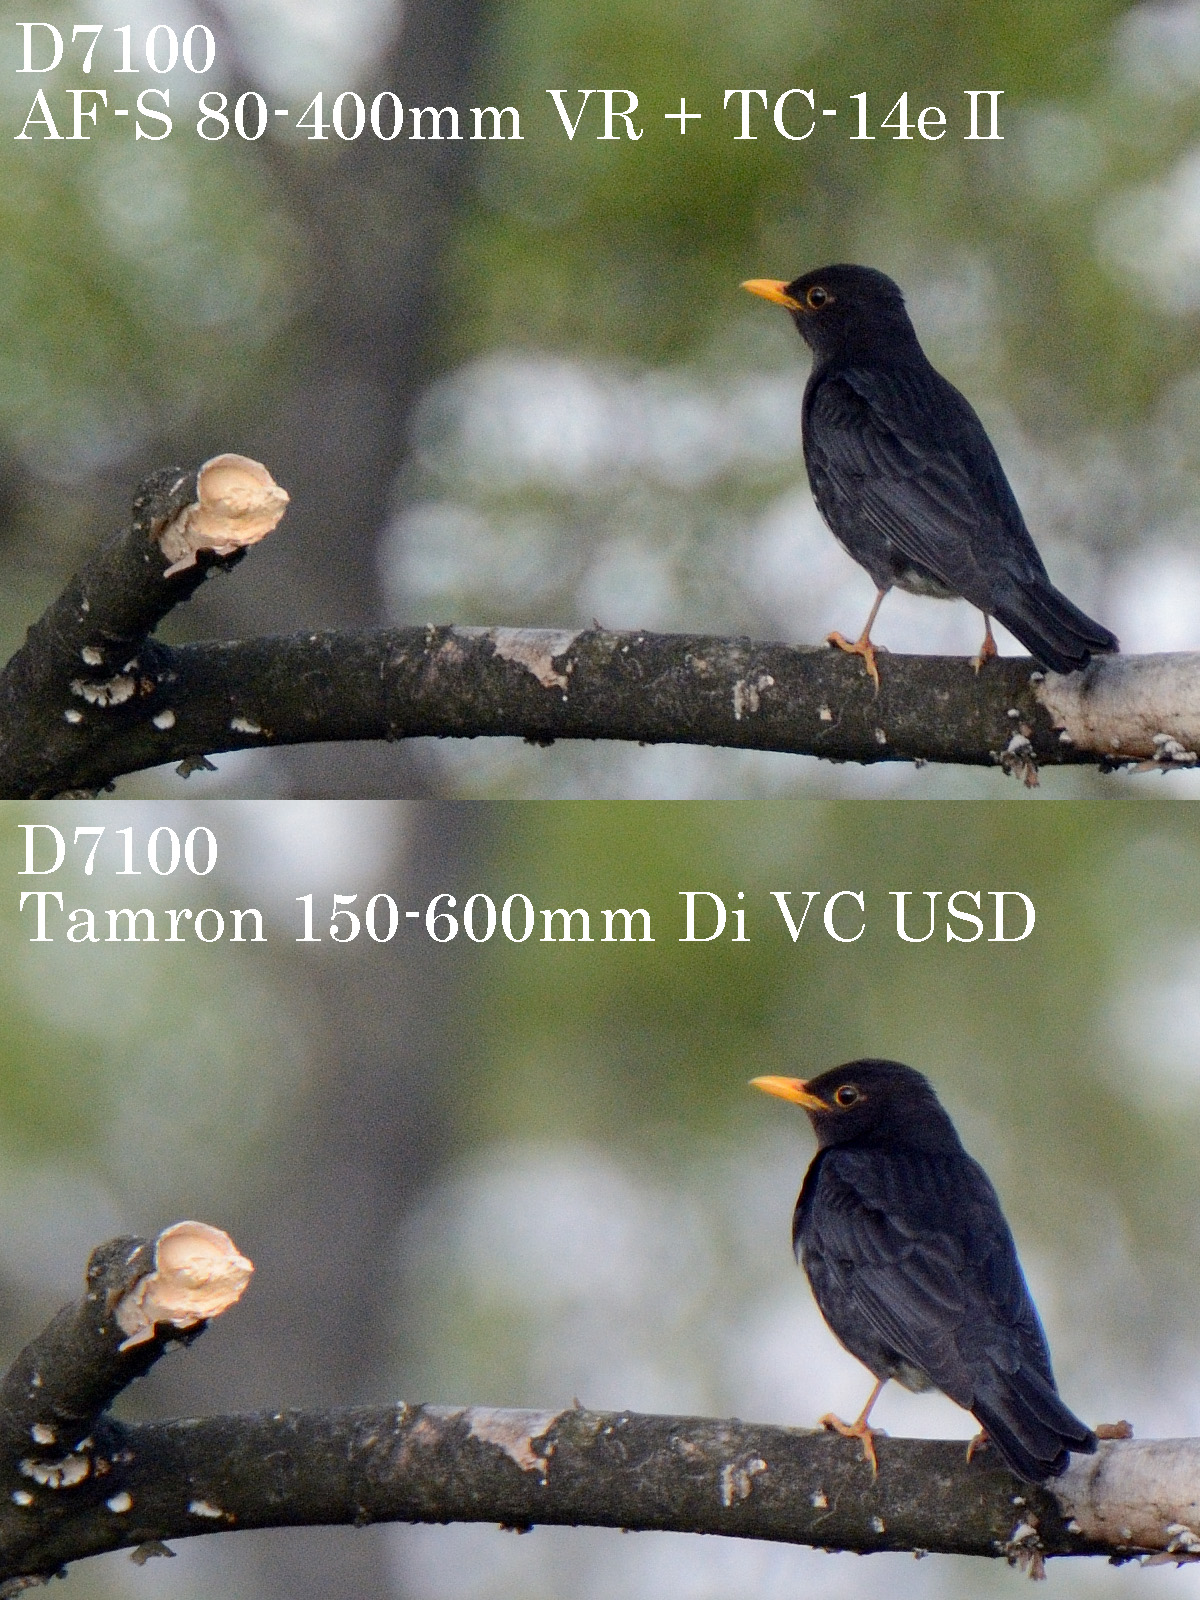 タムロン 150-600mm VS. ニコン AF-S 80-400mm VR　比較画像　クロツグミ